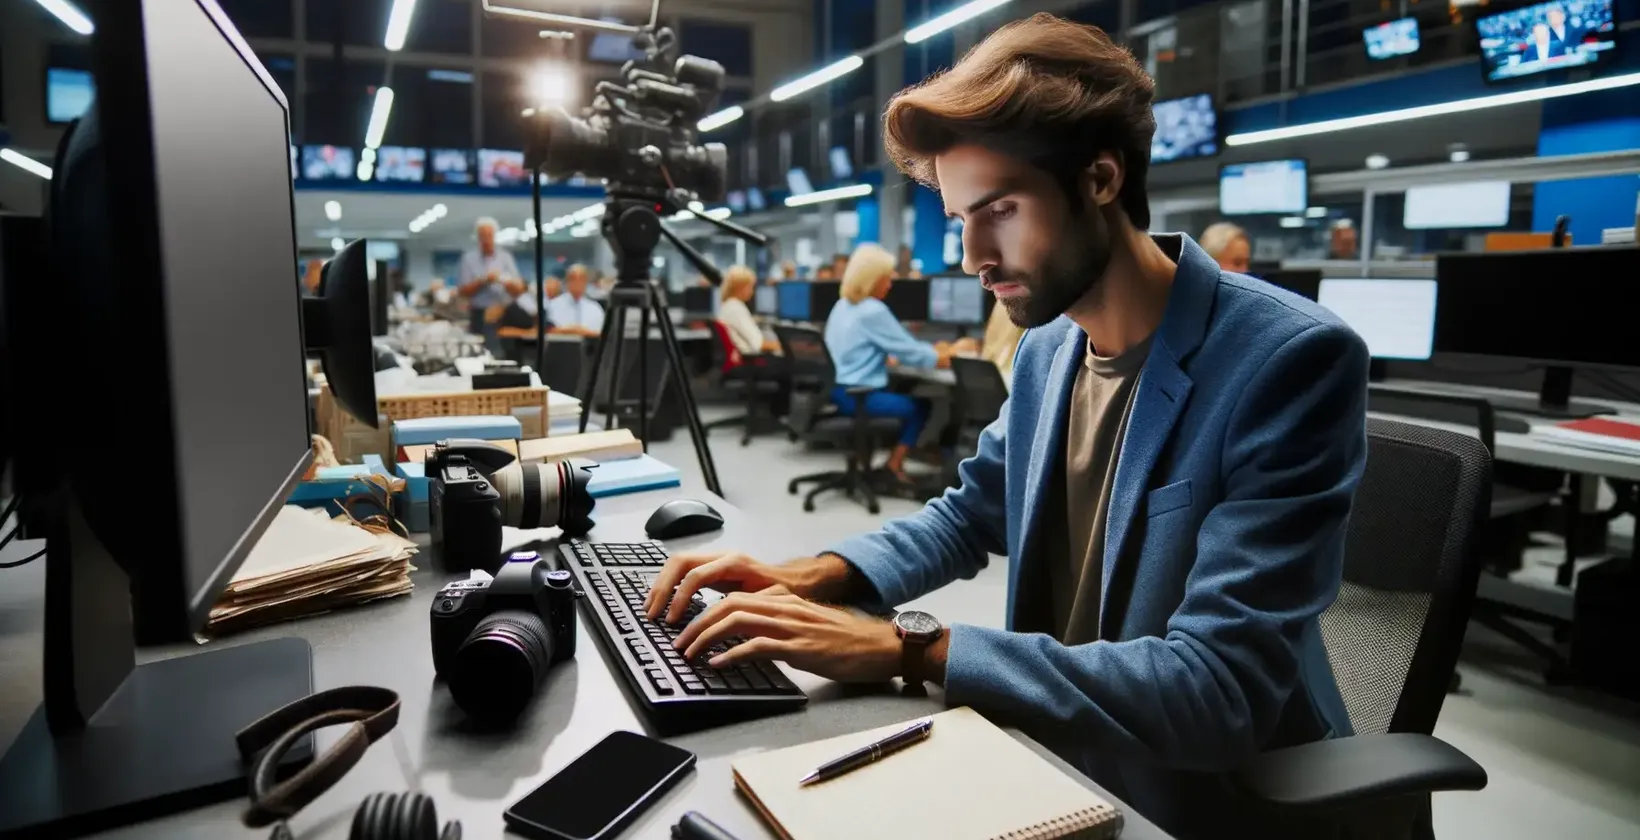 Újságíró egy forgalmas szerkesztőségben a számítógépén lévő átírószoftverrel.
